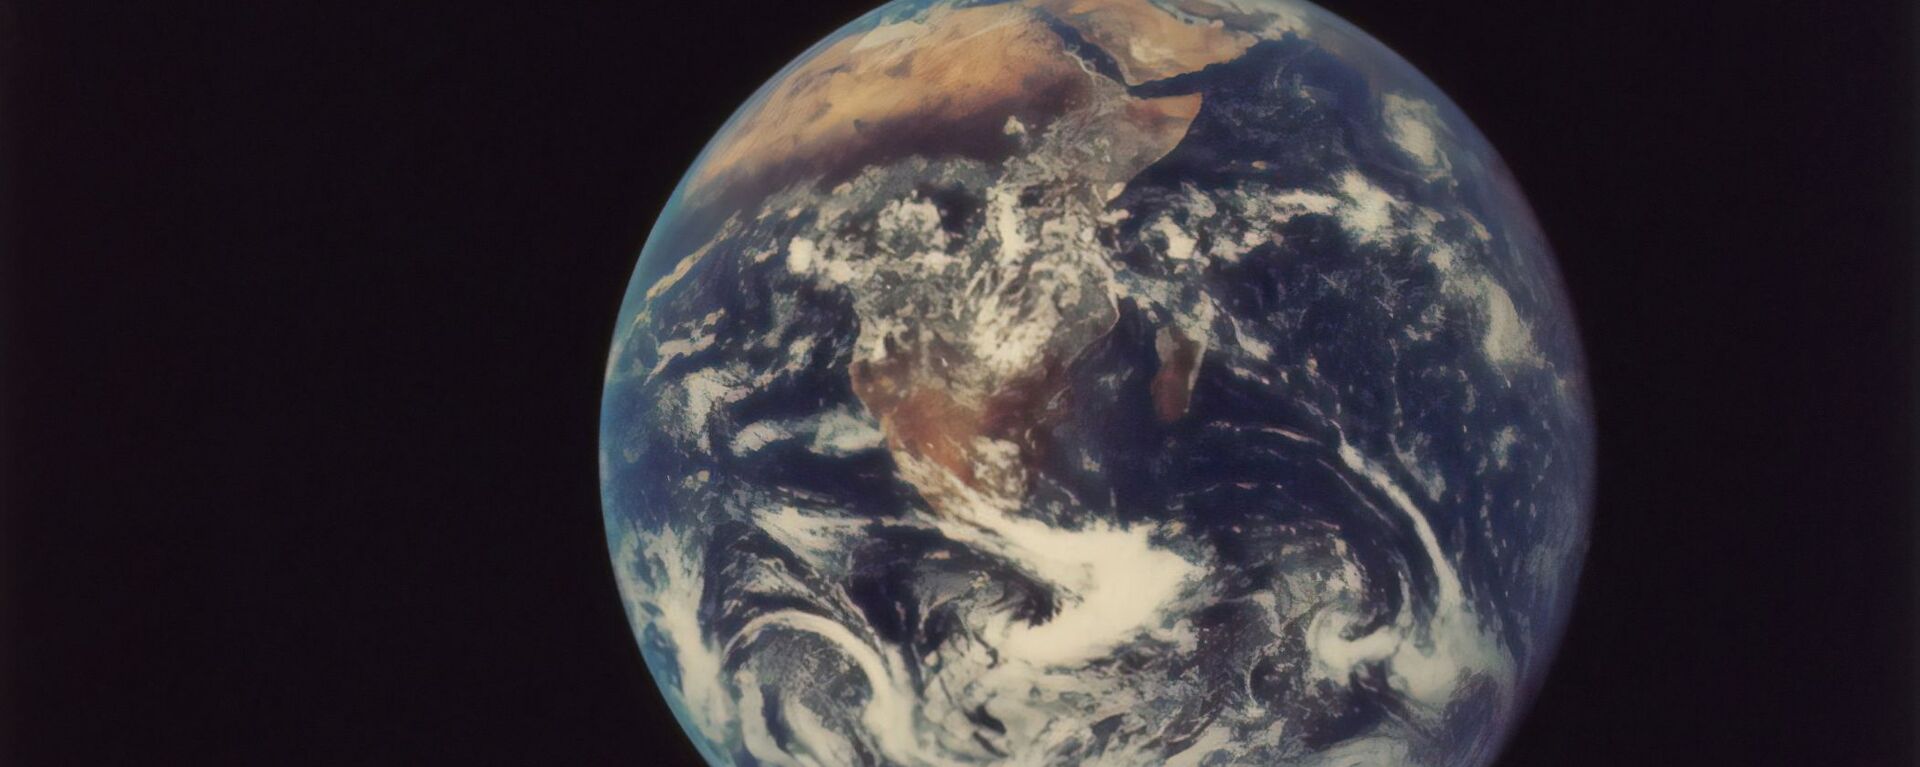 El planeta Tierra - Sputnik Mundo, 1920, 26.03.2021